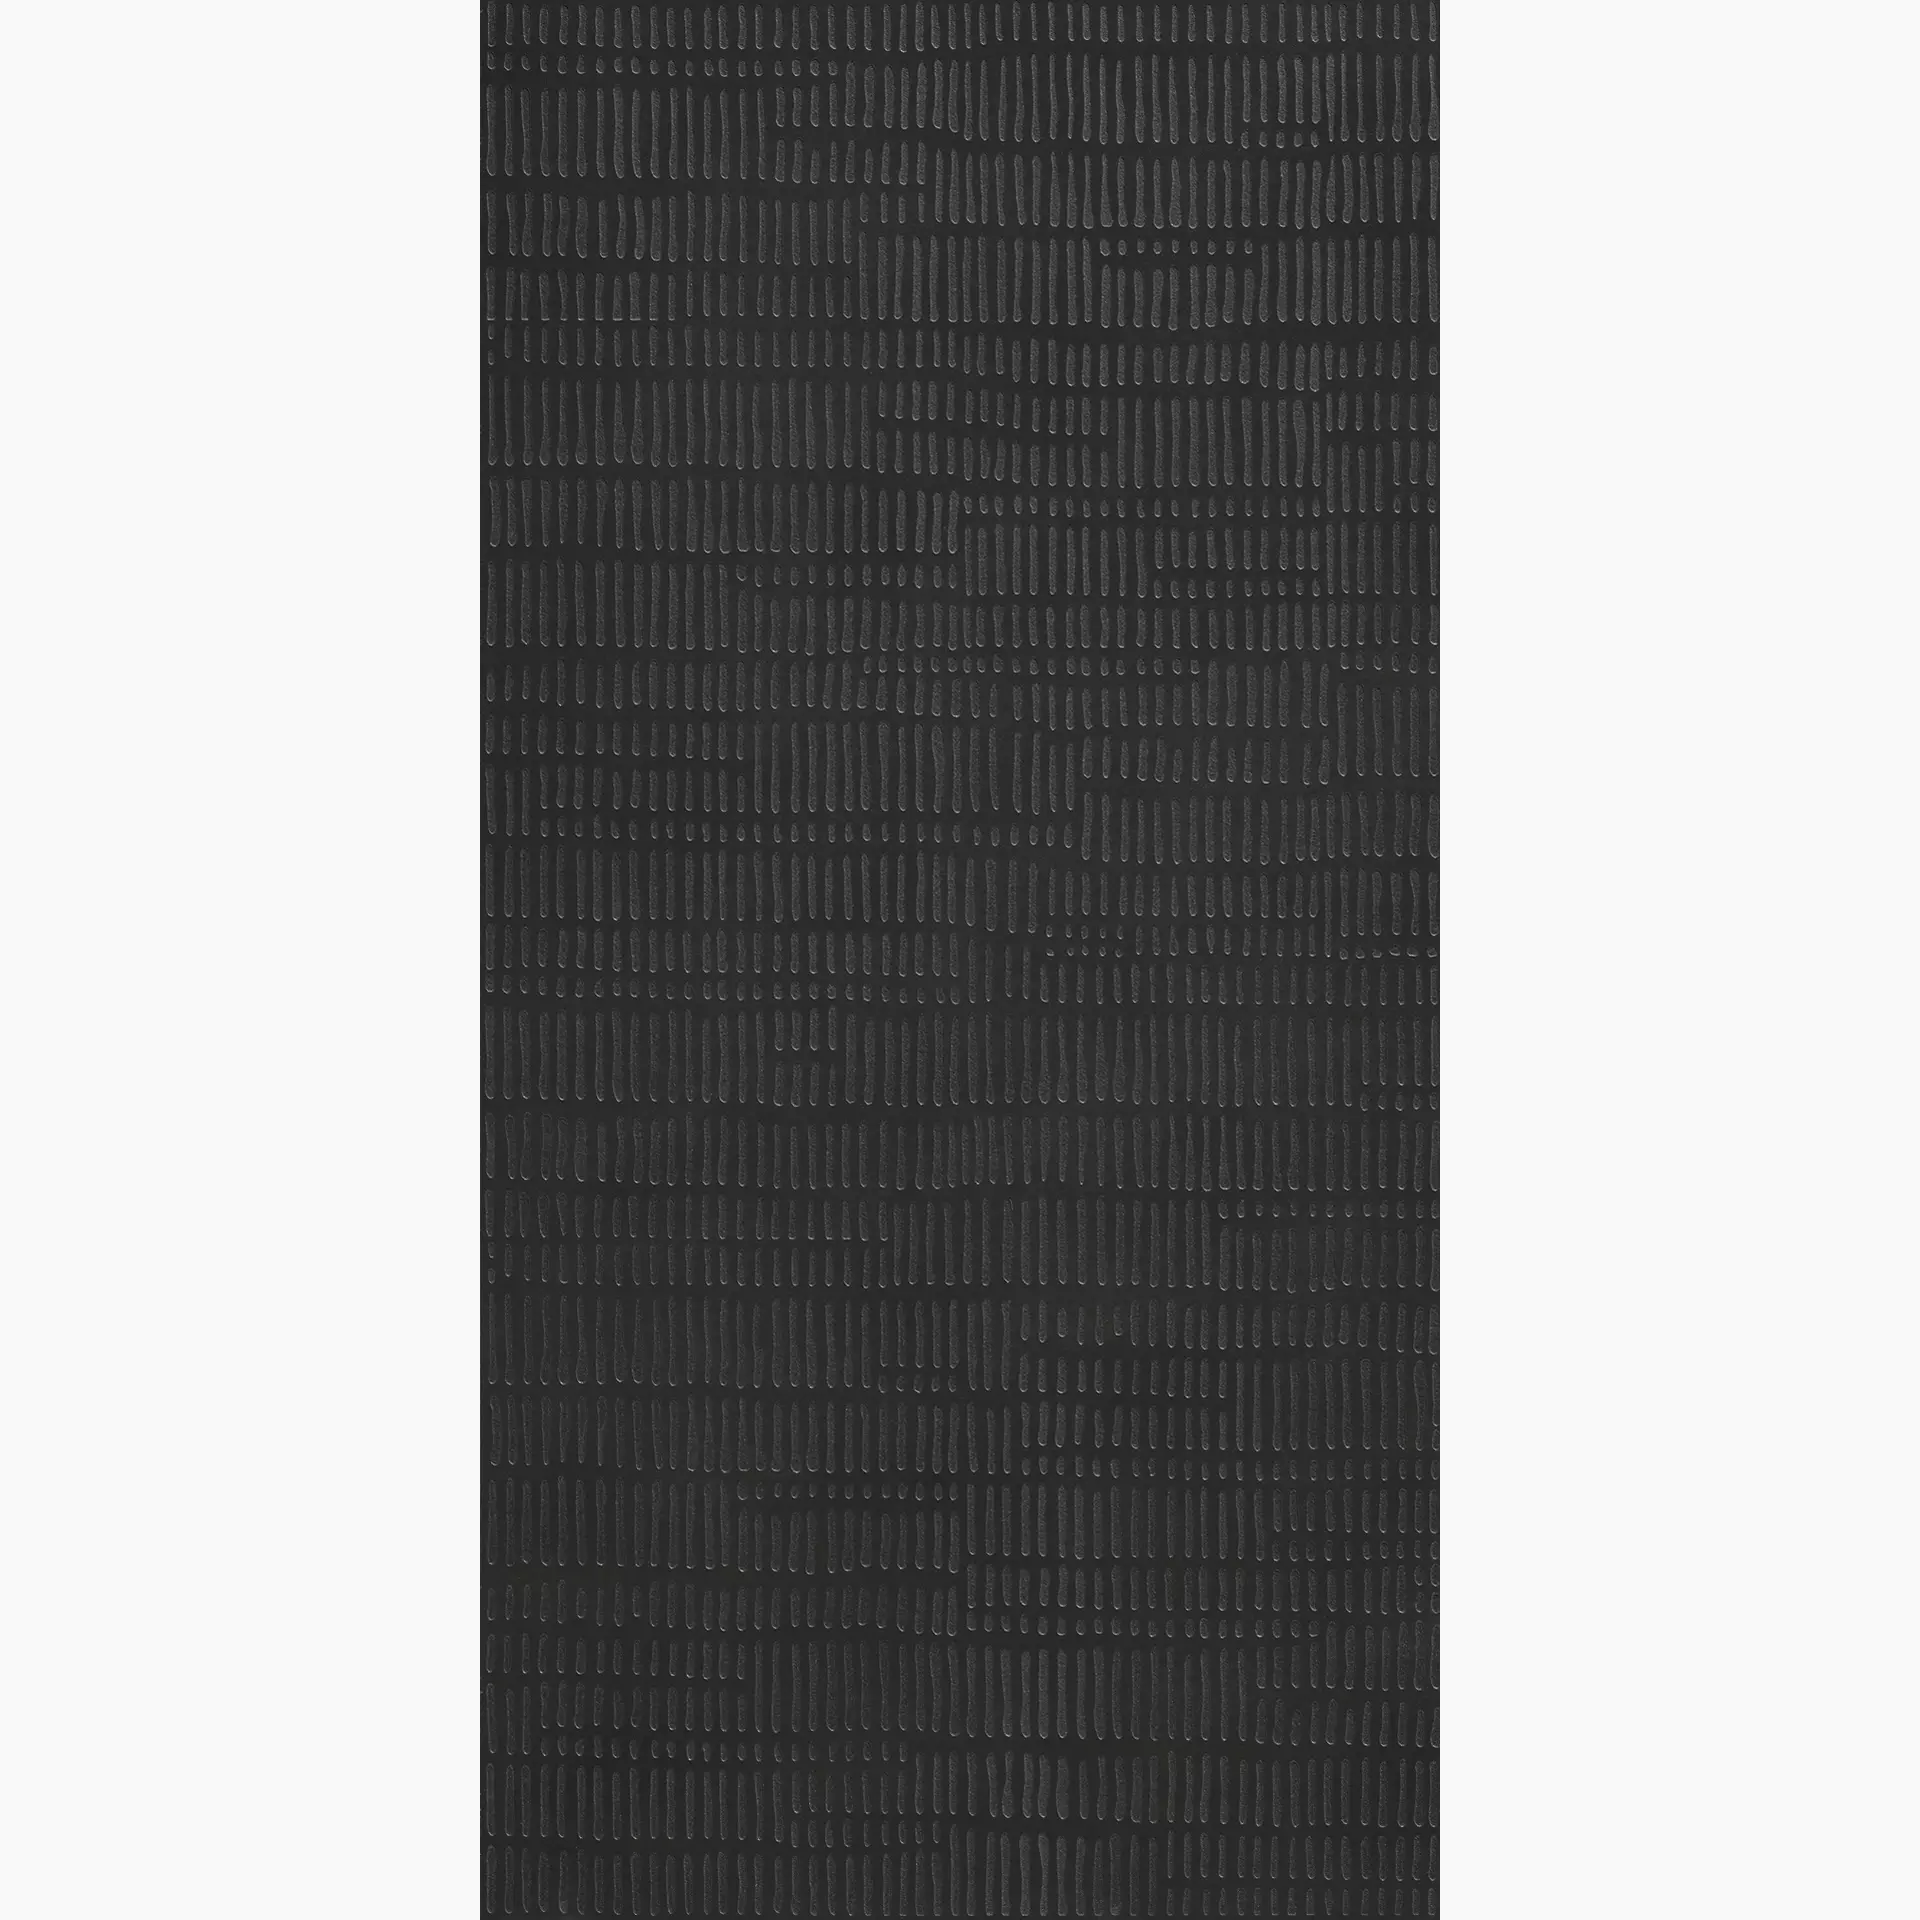 KRONOS Metallique Noir Naturale Decor Etnique ME060 60x120cm rectified 9mm